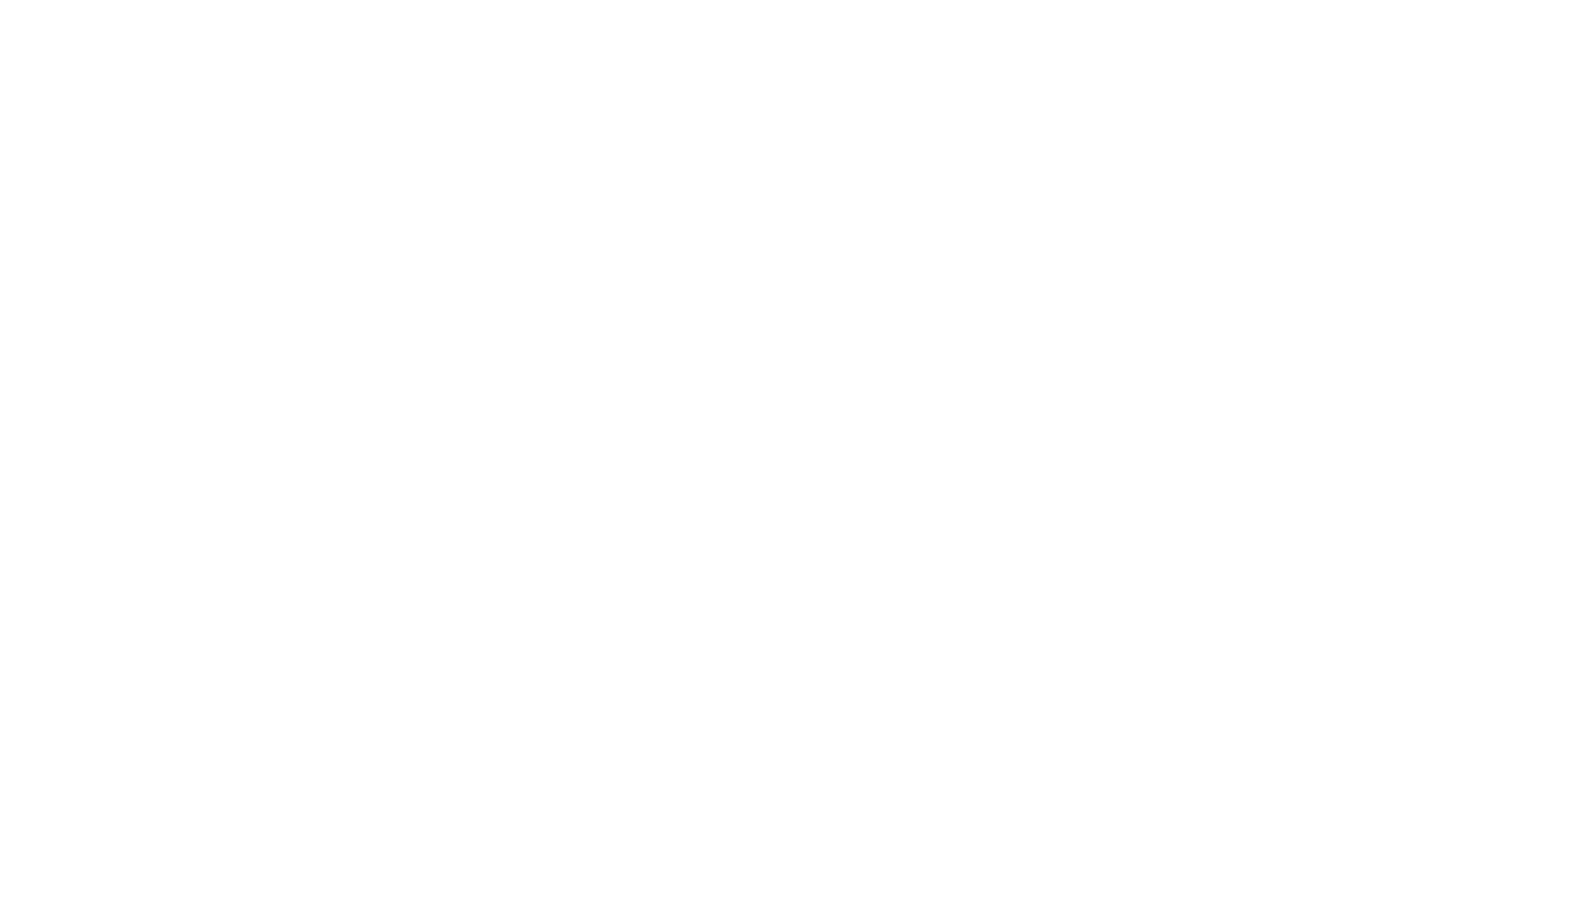 Central Garden & Pet logo large for dark backgrounds (transparent PNG)